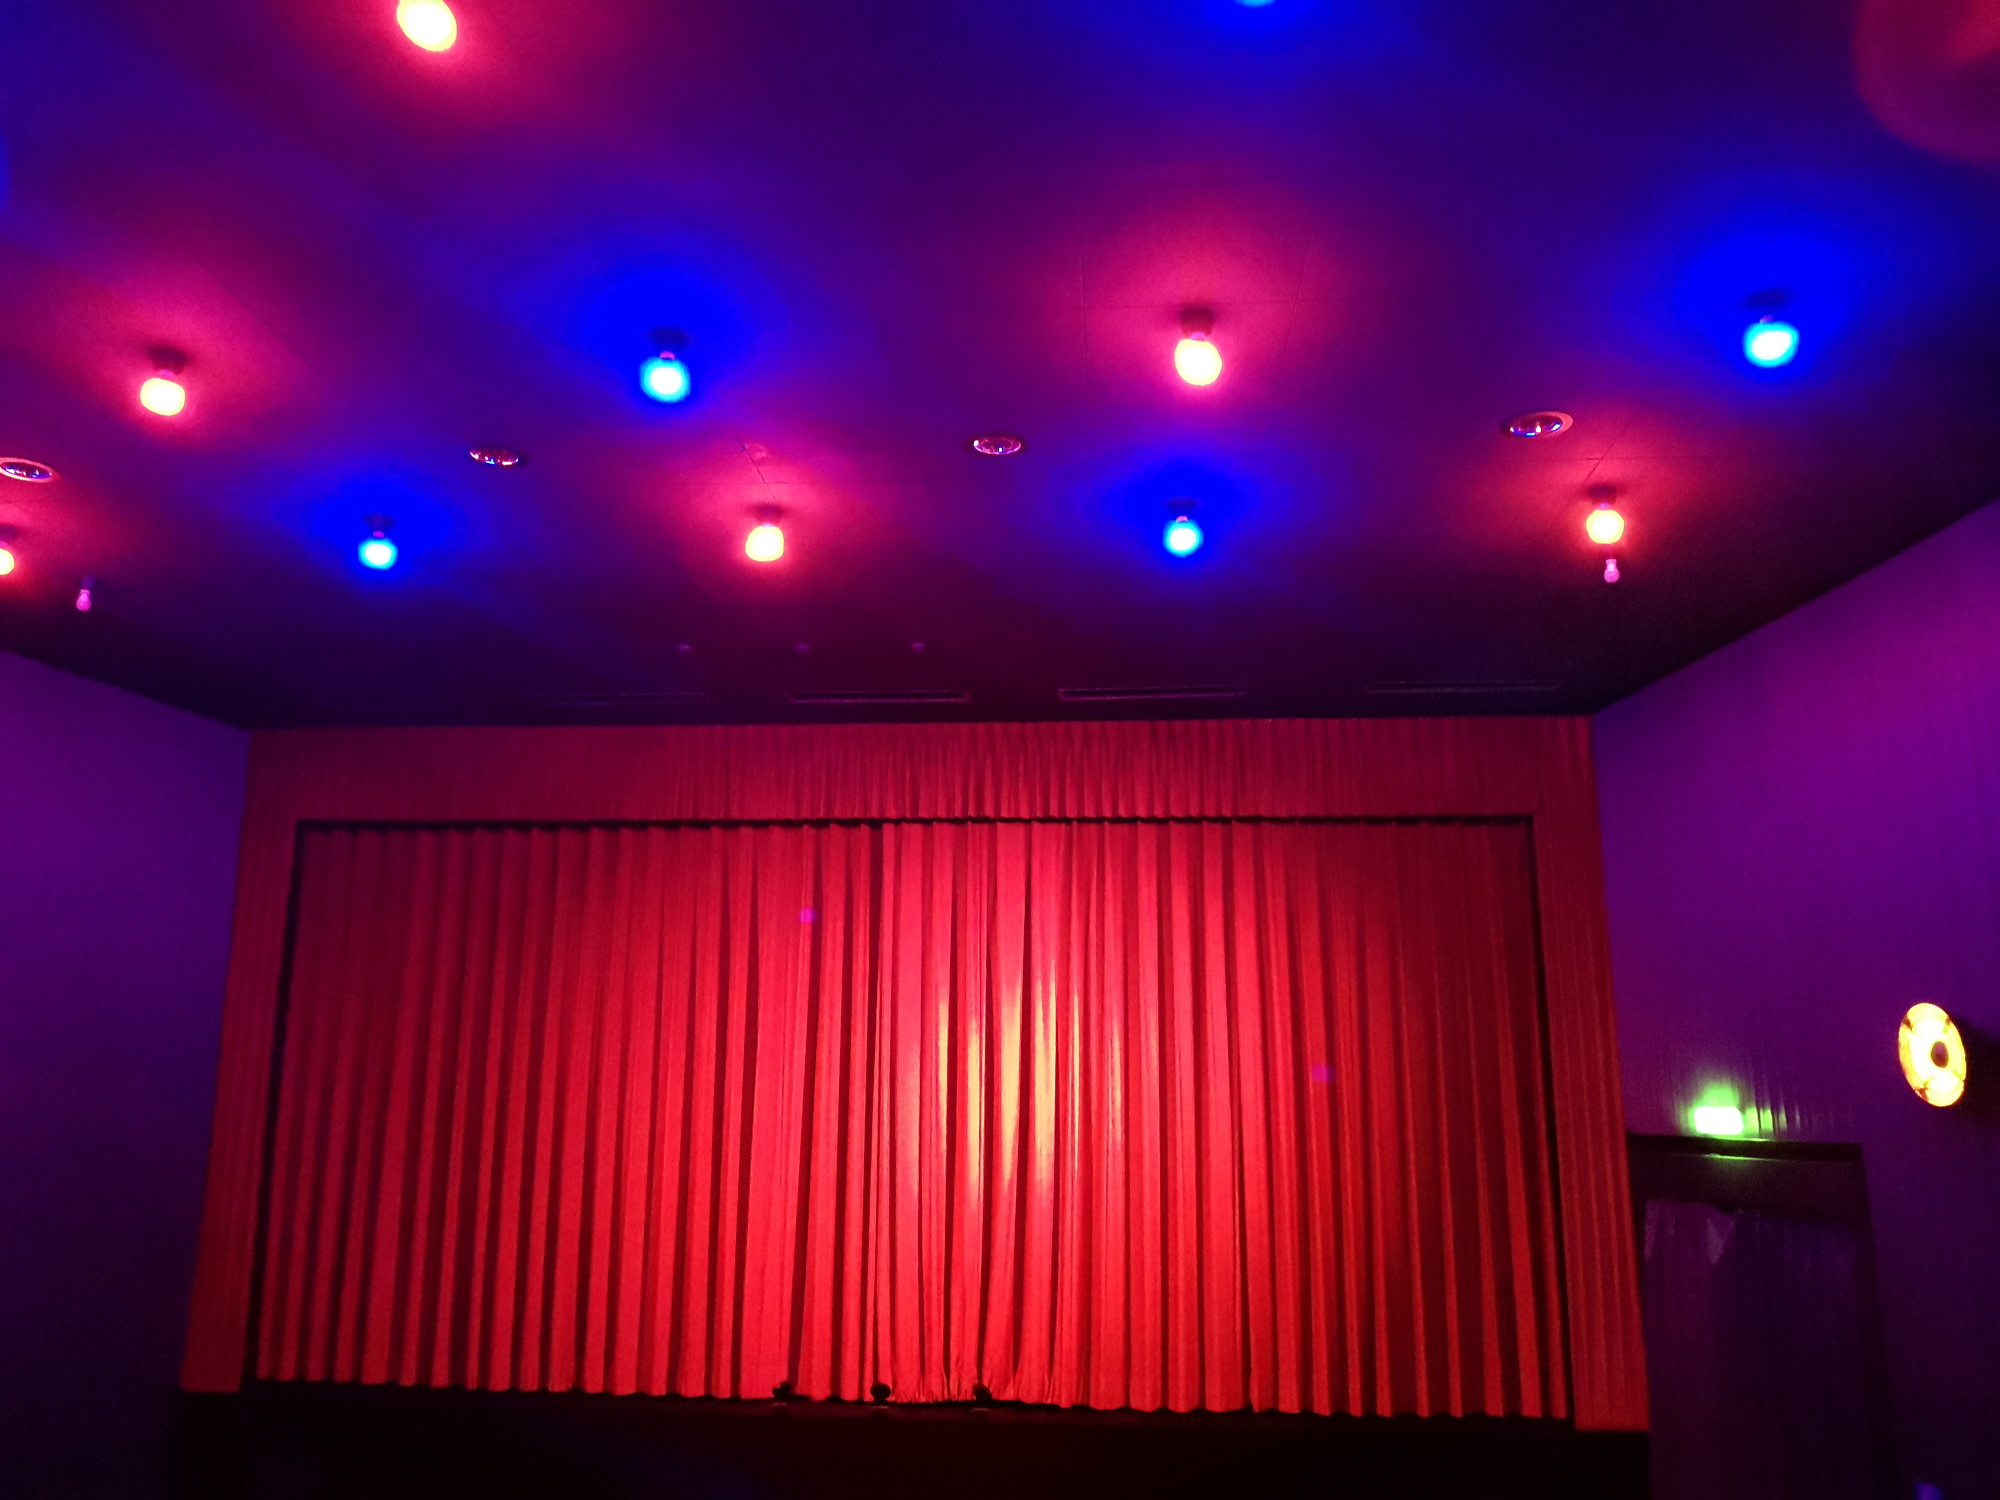 Kinosaal. Zu sehen das CinePlanet 5 in Bad Segeberg, Saal CP 3 am 03. Oktober beim Film Wochenendrebellen. Relativ grelle rote und blaue Deckenbeleuchtung.